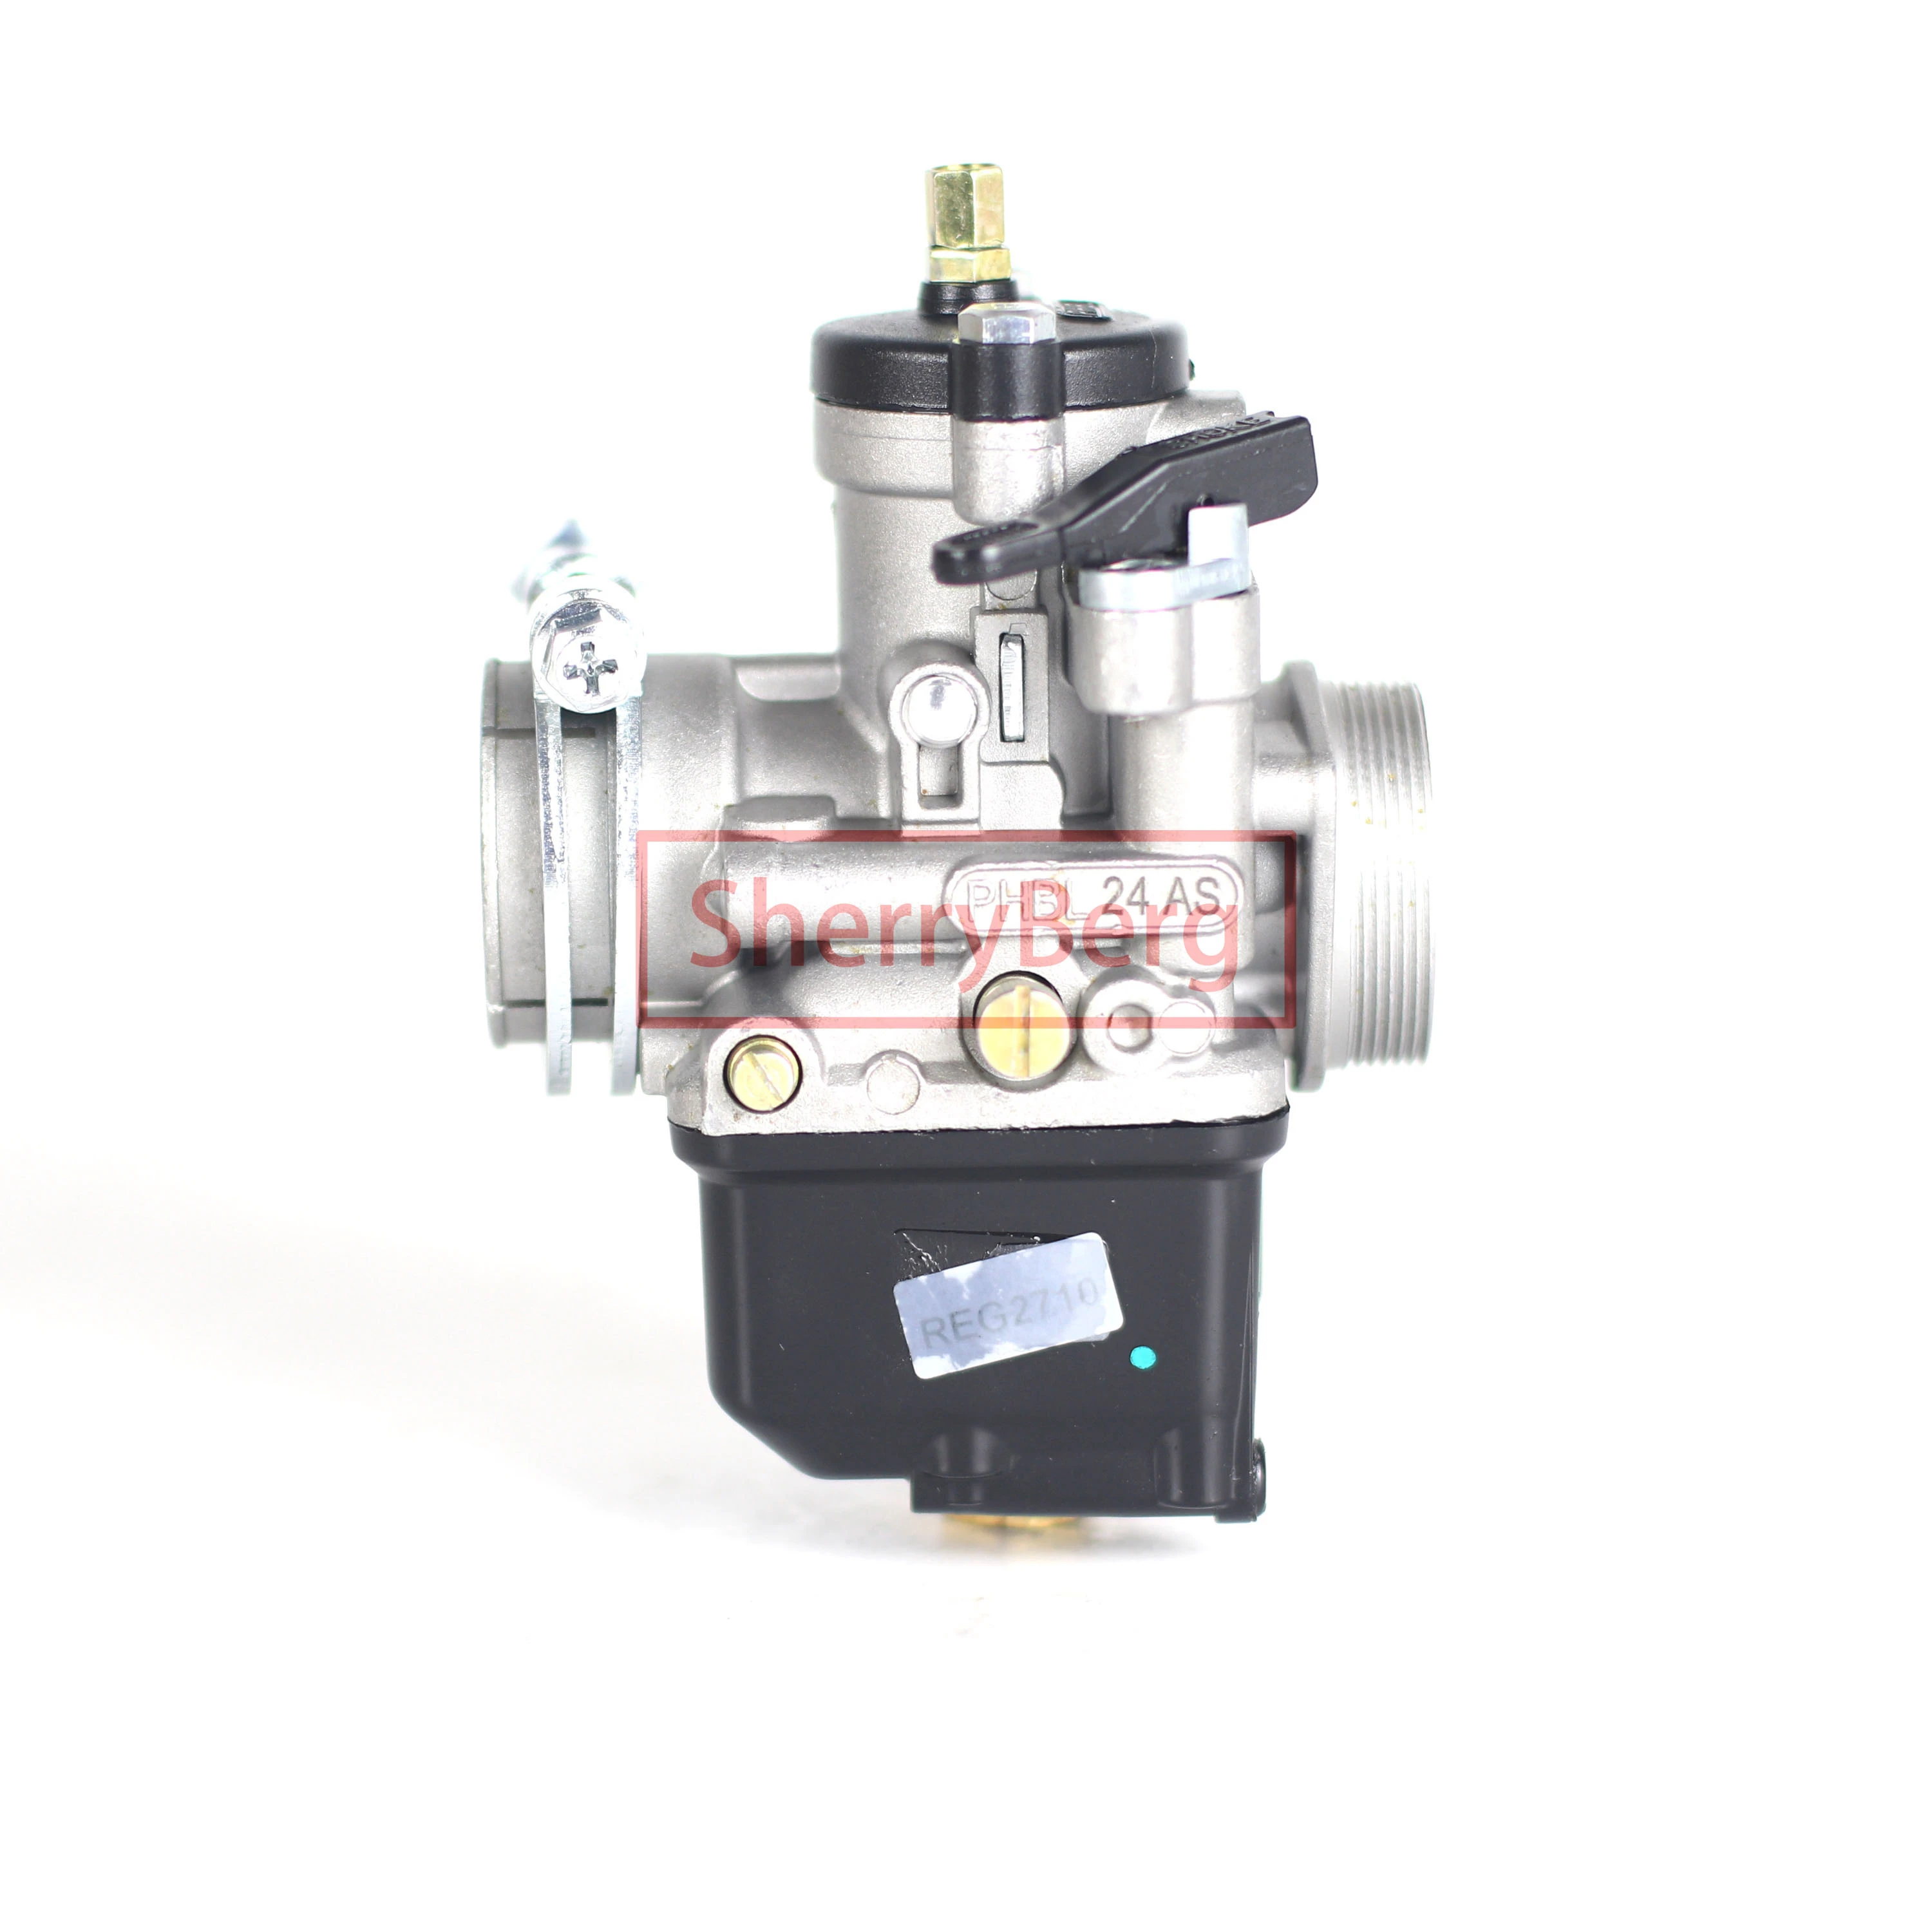 SherryBerg Carburador de repuesto para Dellorto PHBL 24, 24MM, 2T, 4T, para  VESPA, Montesa, ETC.|Carburador| - AliExpress